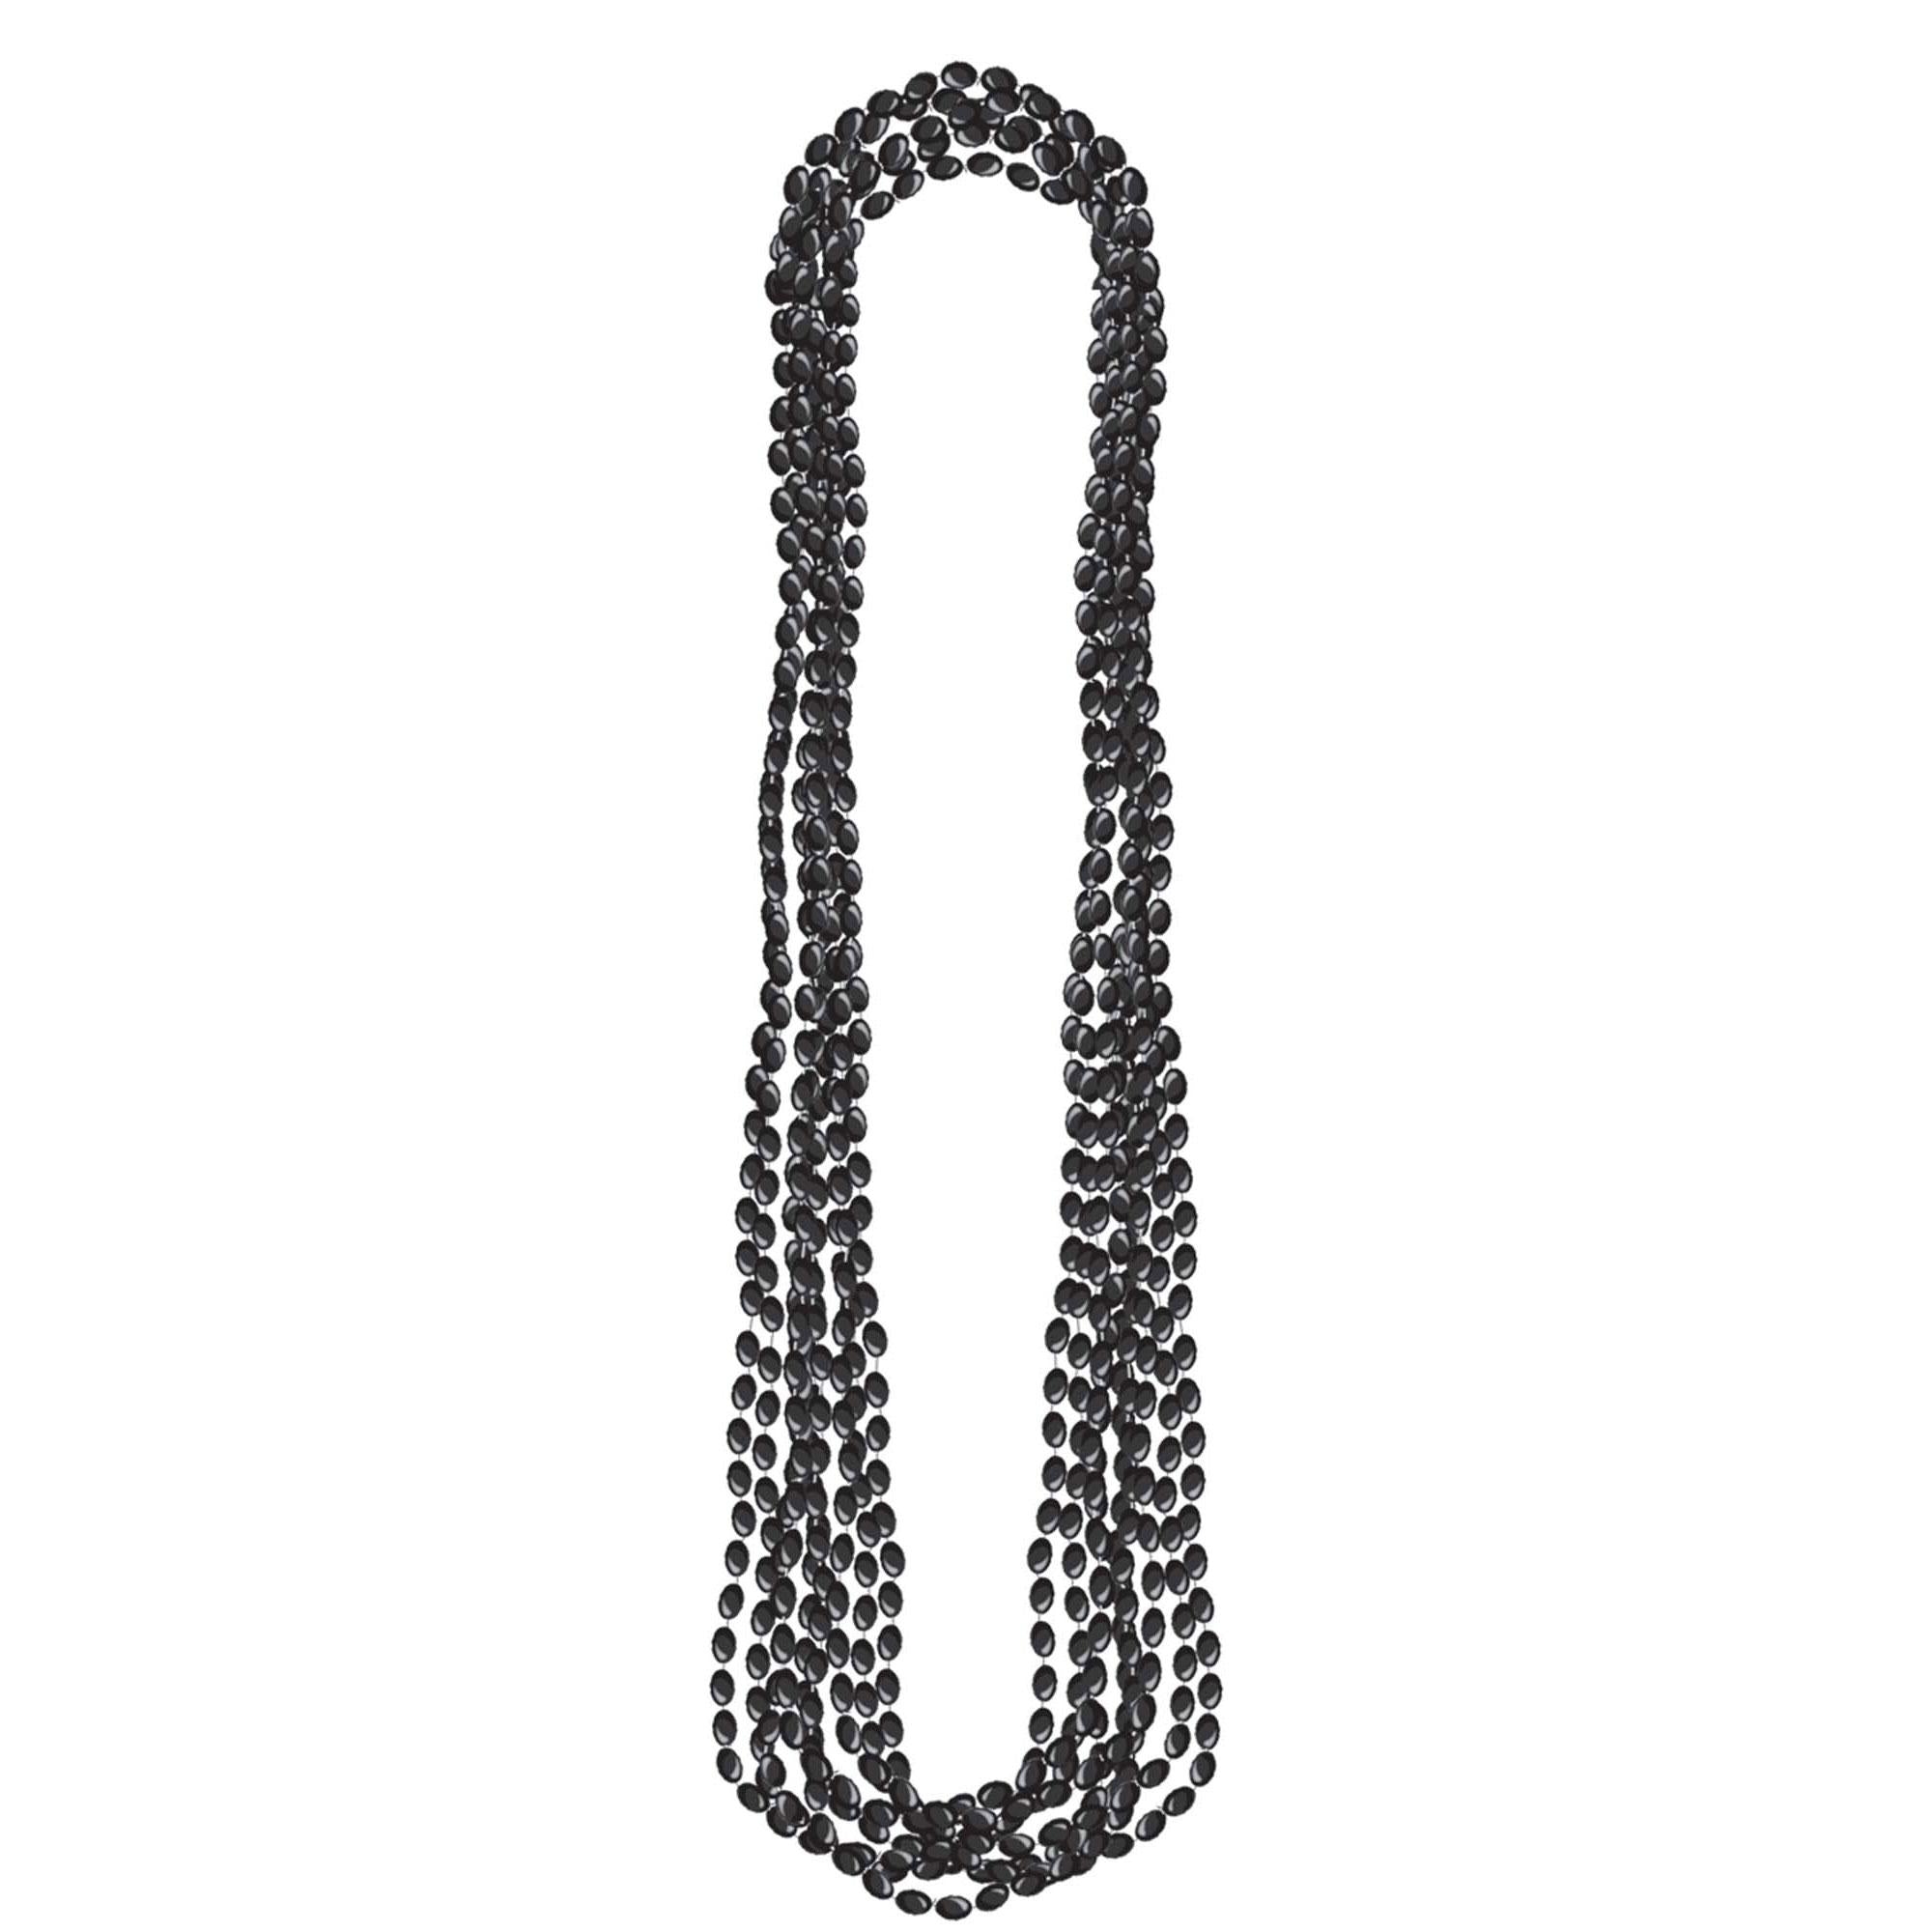 Metallic Black Necklaces 8pcs Costumes & Apparel - Party Centre